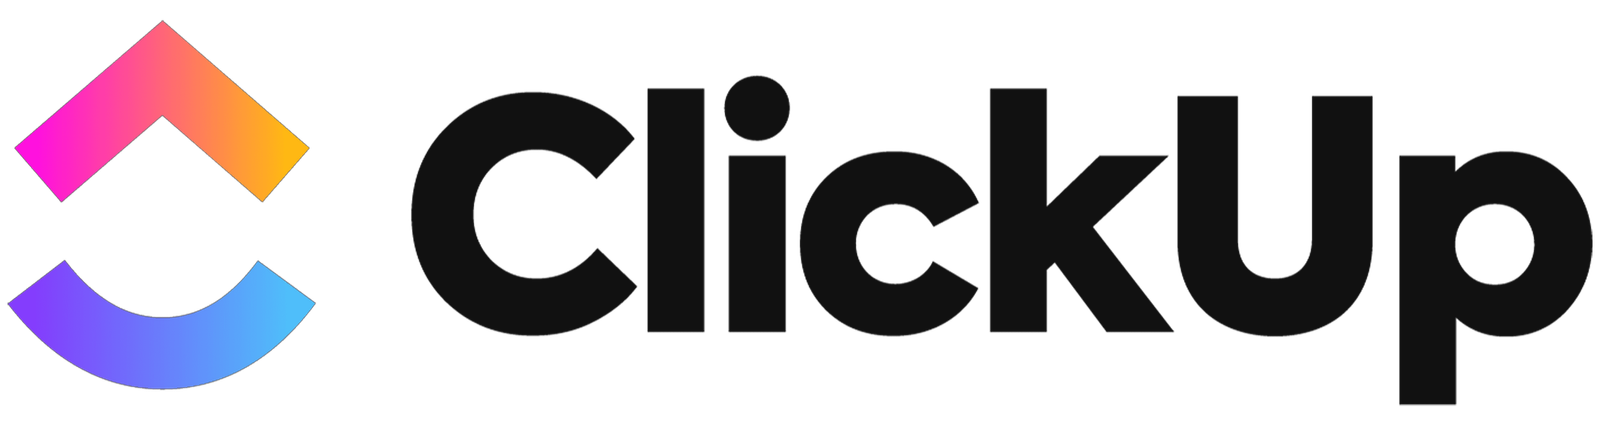 ClickUp-Logo.png